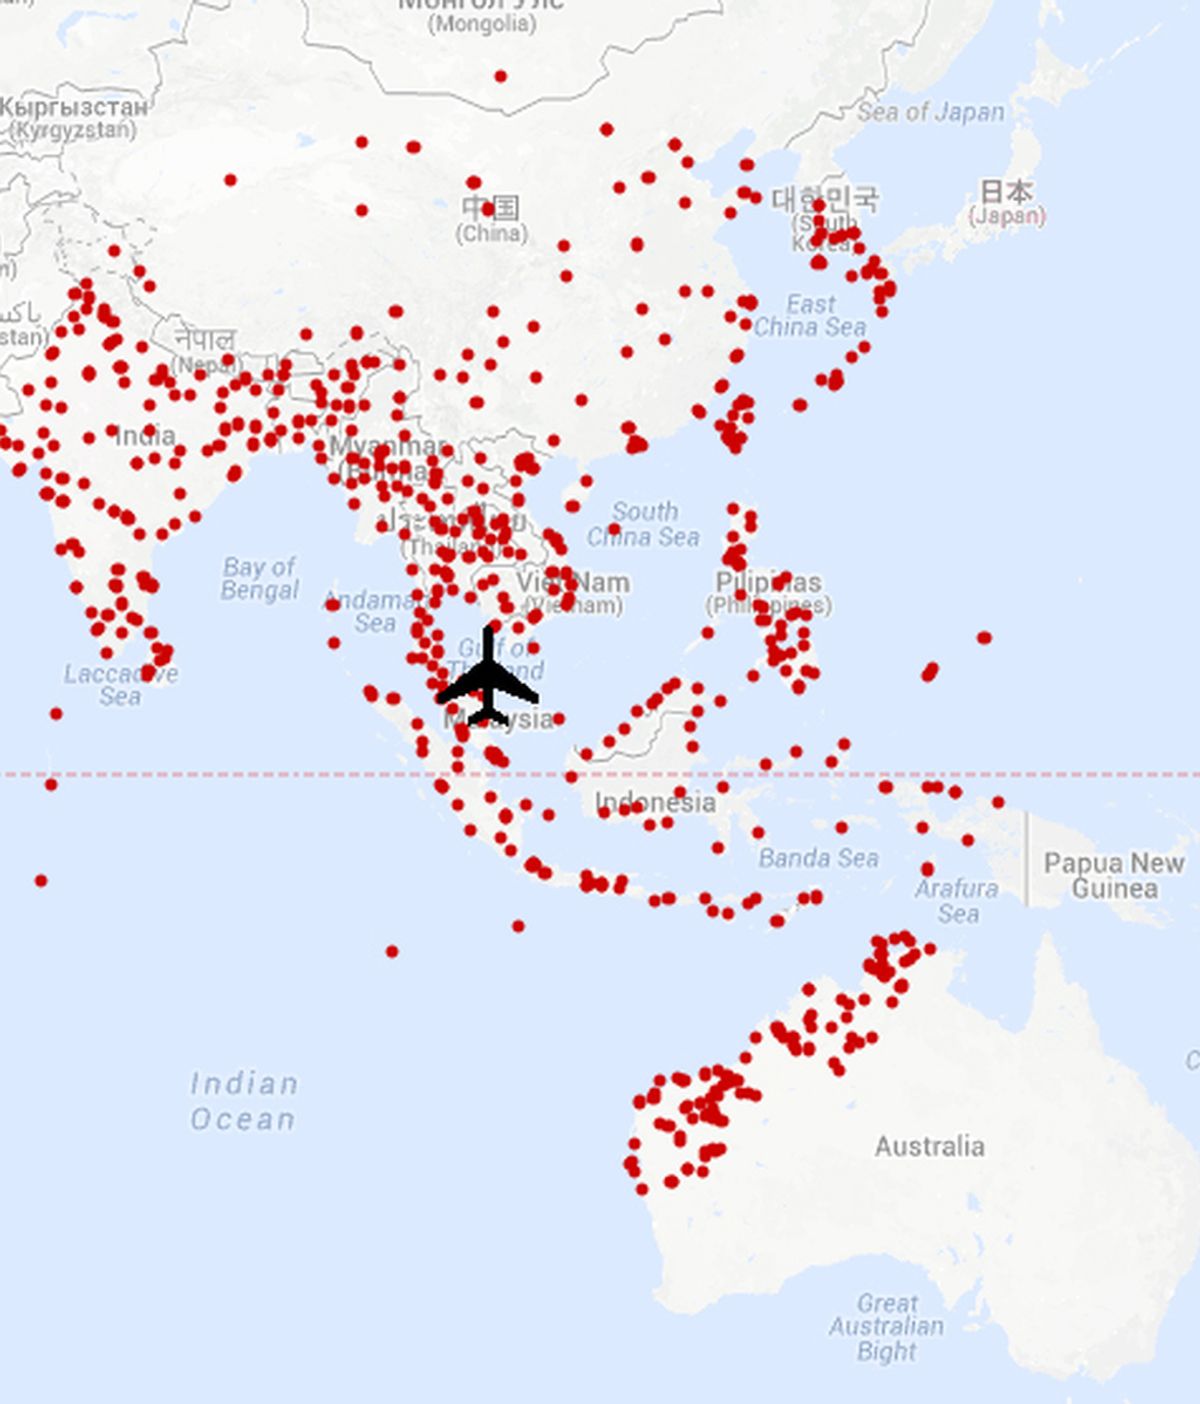 Mapa con la localización de los aeropuertos en los que pudo aterrizar el avión desaparecido de Malaysia Airlines